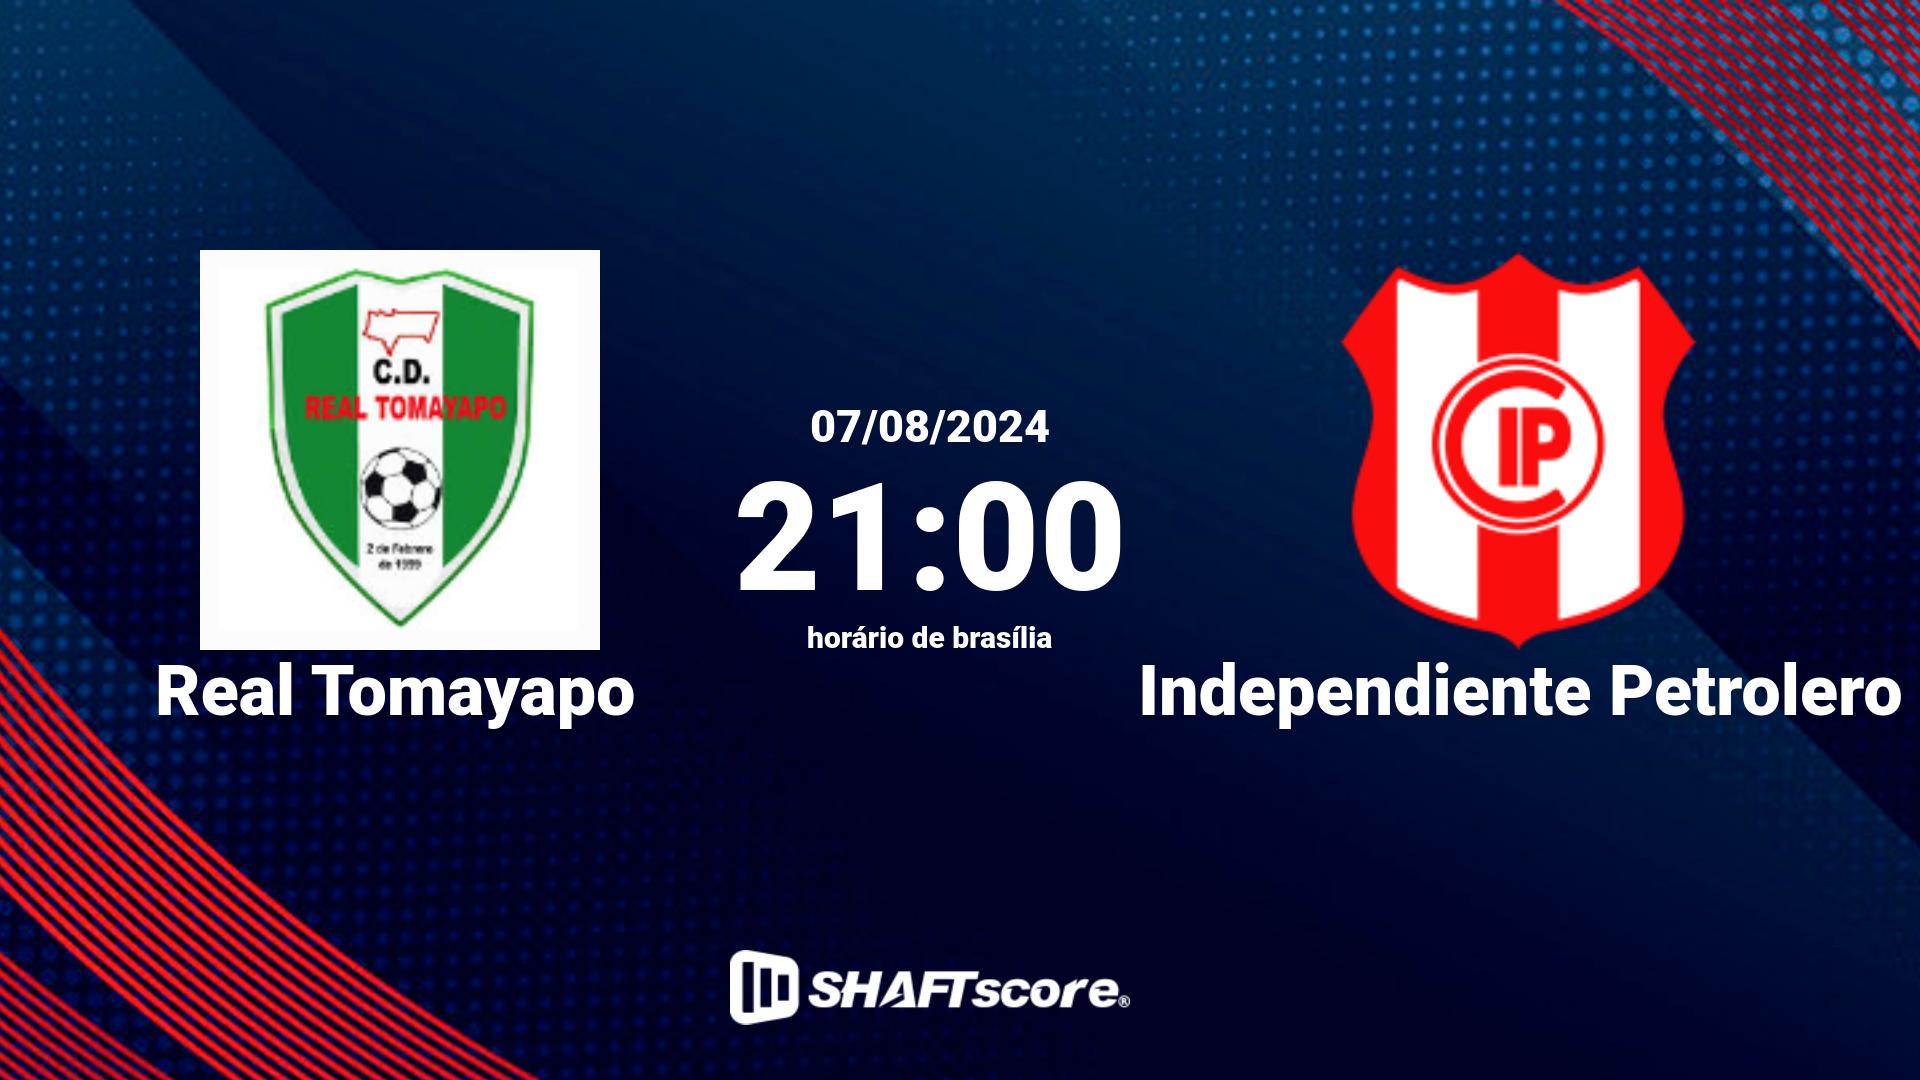 Estatísticas do jogo Real Tomayapo vs Independiente Petrolero 07.08 21:00